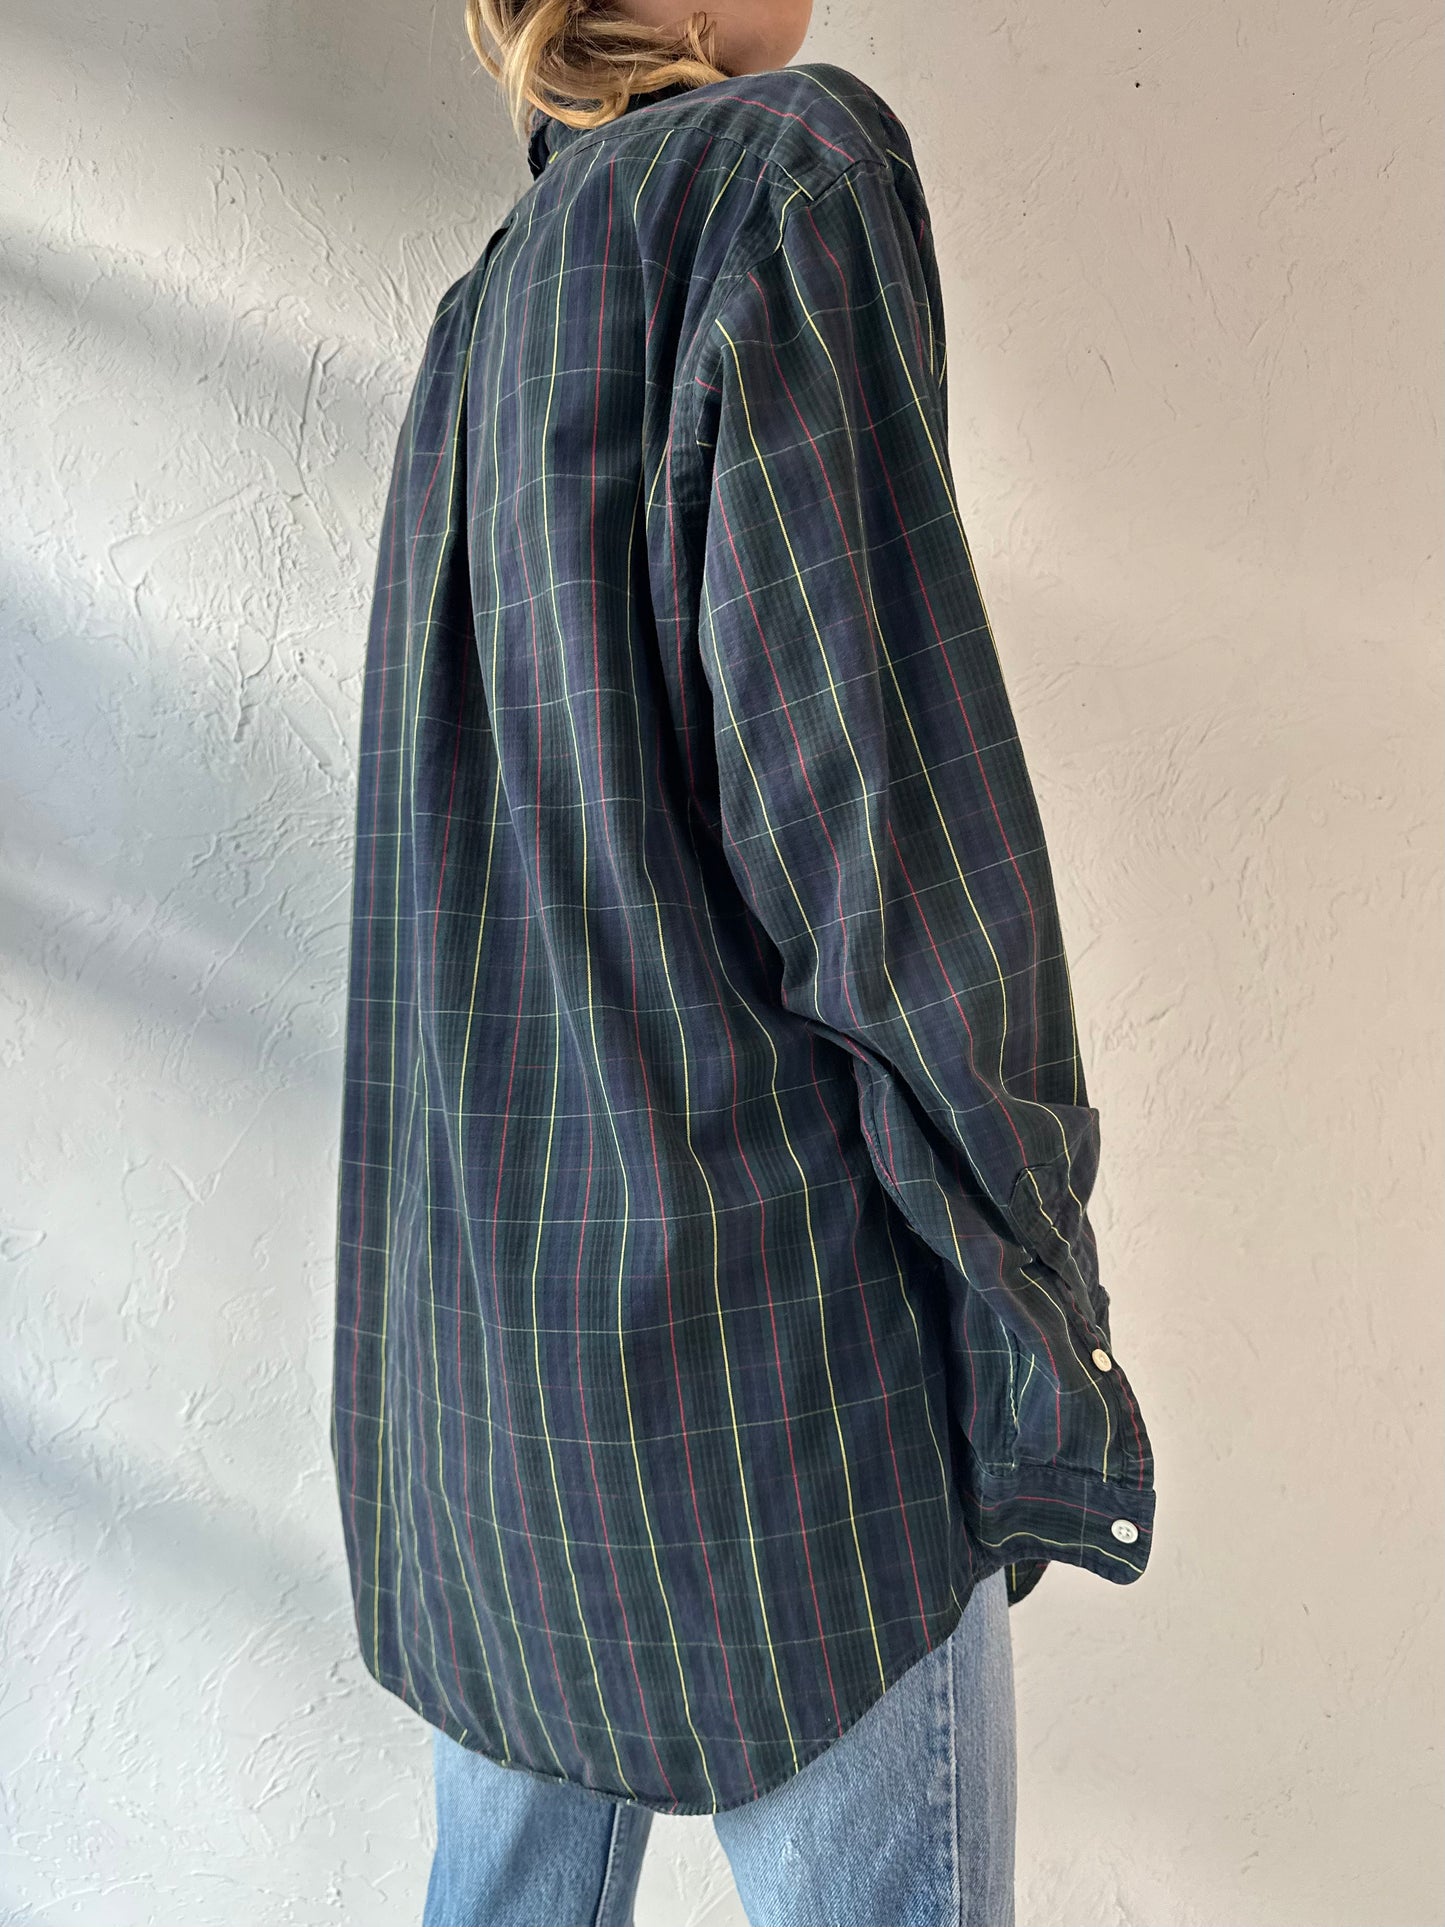 Y2k 'Ralph Lauren' Plaid Button Up Shirt / Large